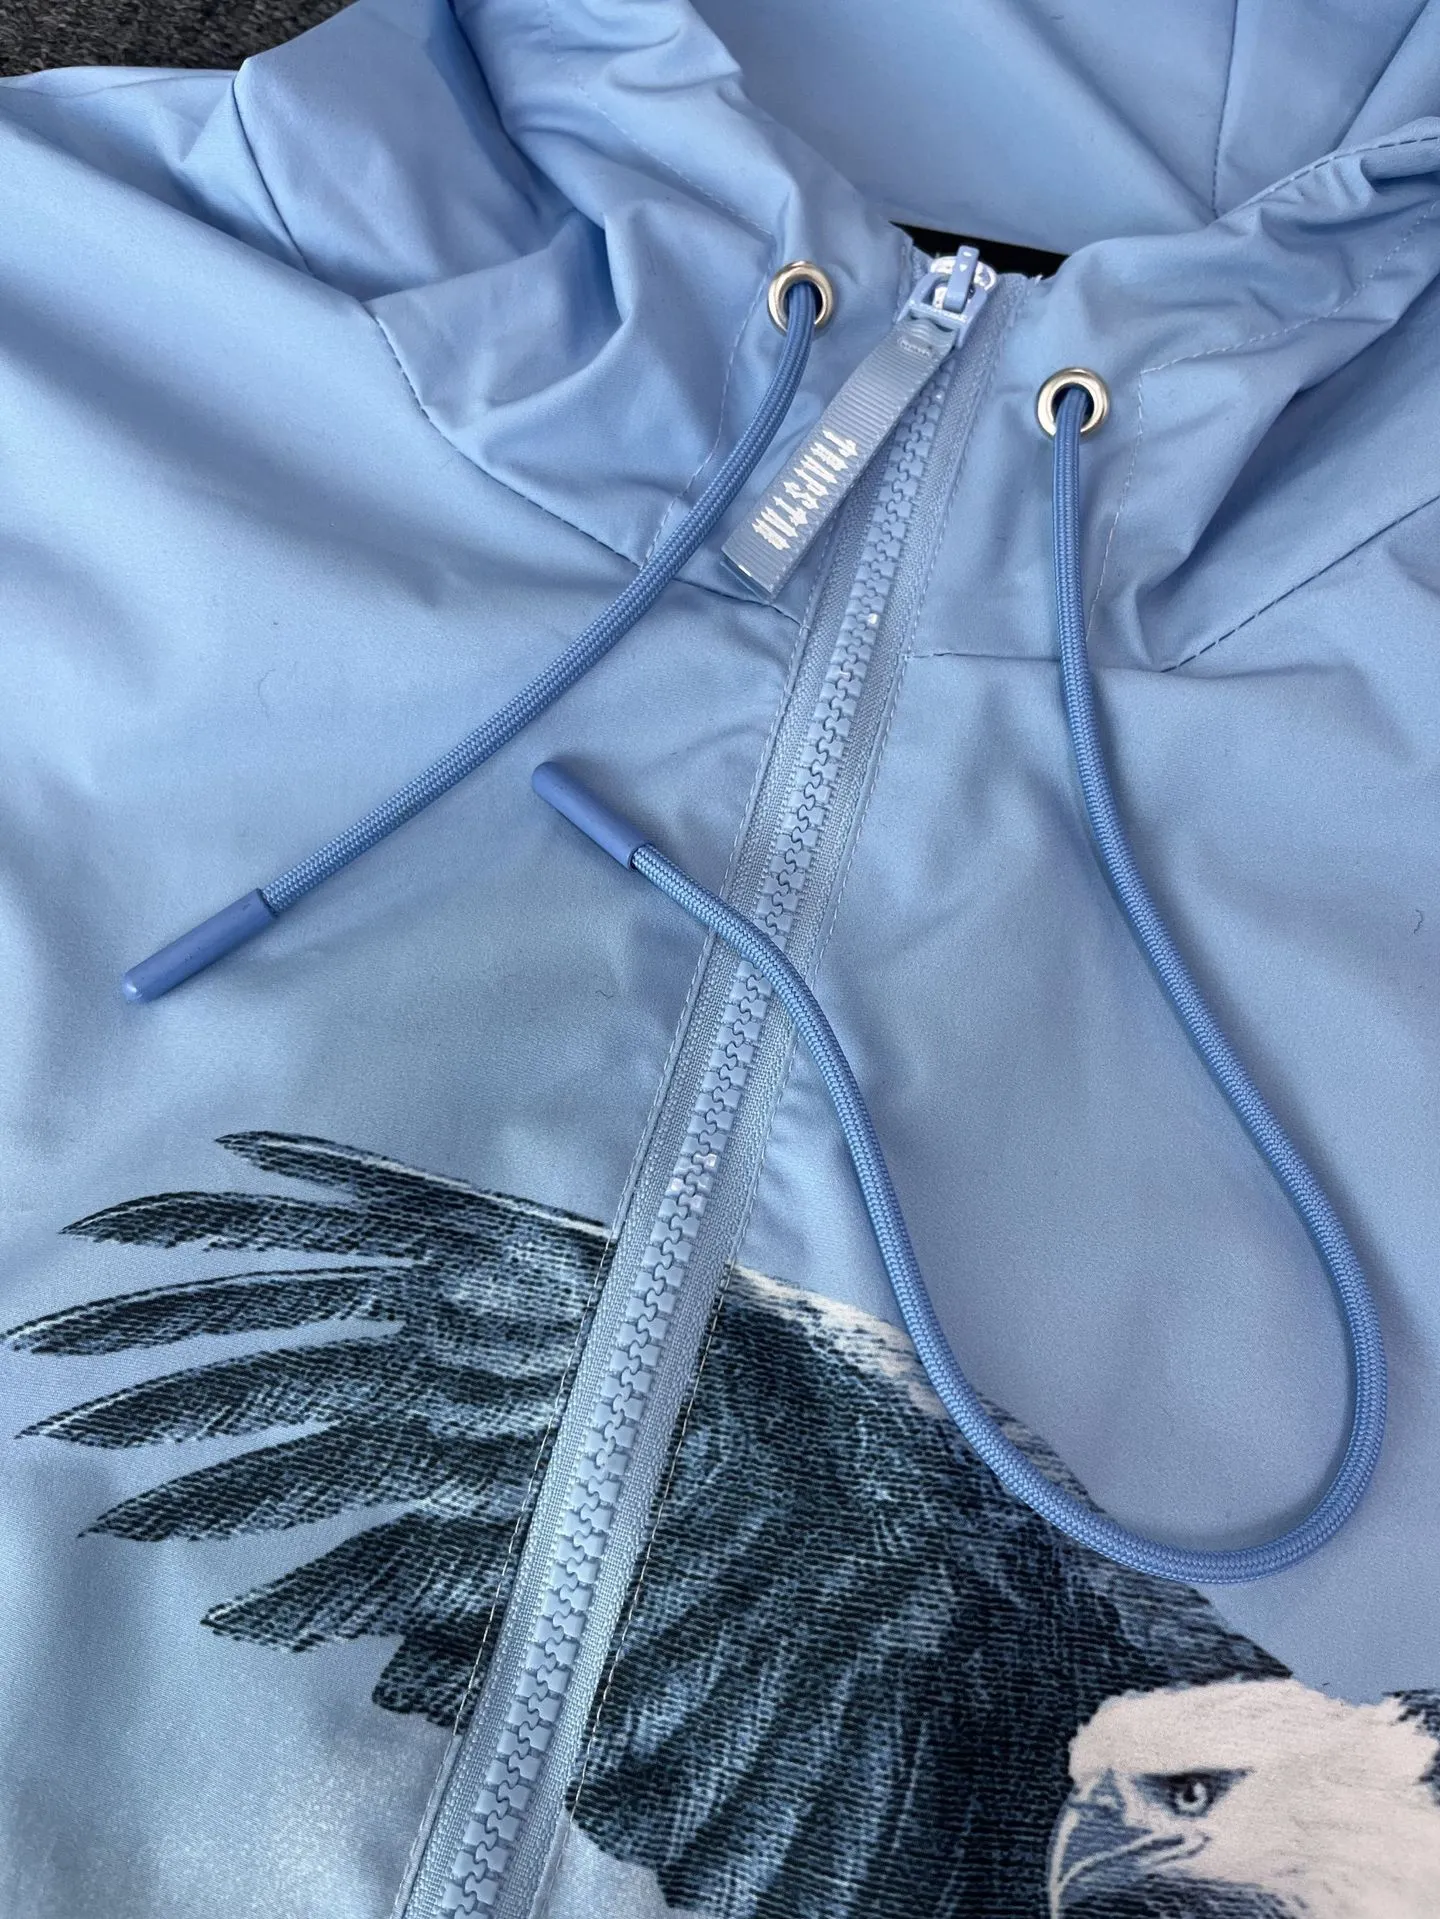 Sping Autumn Windbreaker Jackets Trapstar Brand Embroidery Men Women Casual Outdoor Coat Hooded Waterproof Zipper